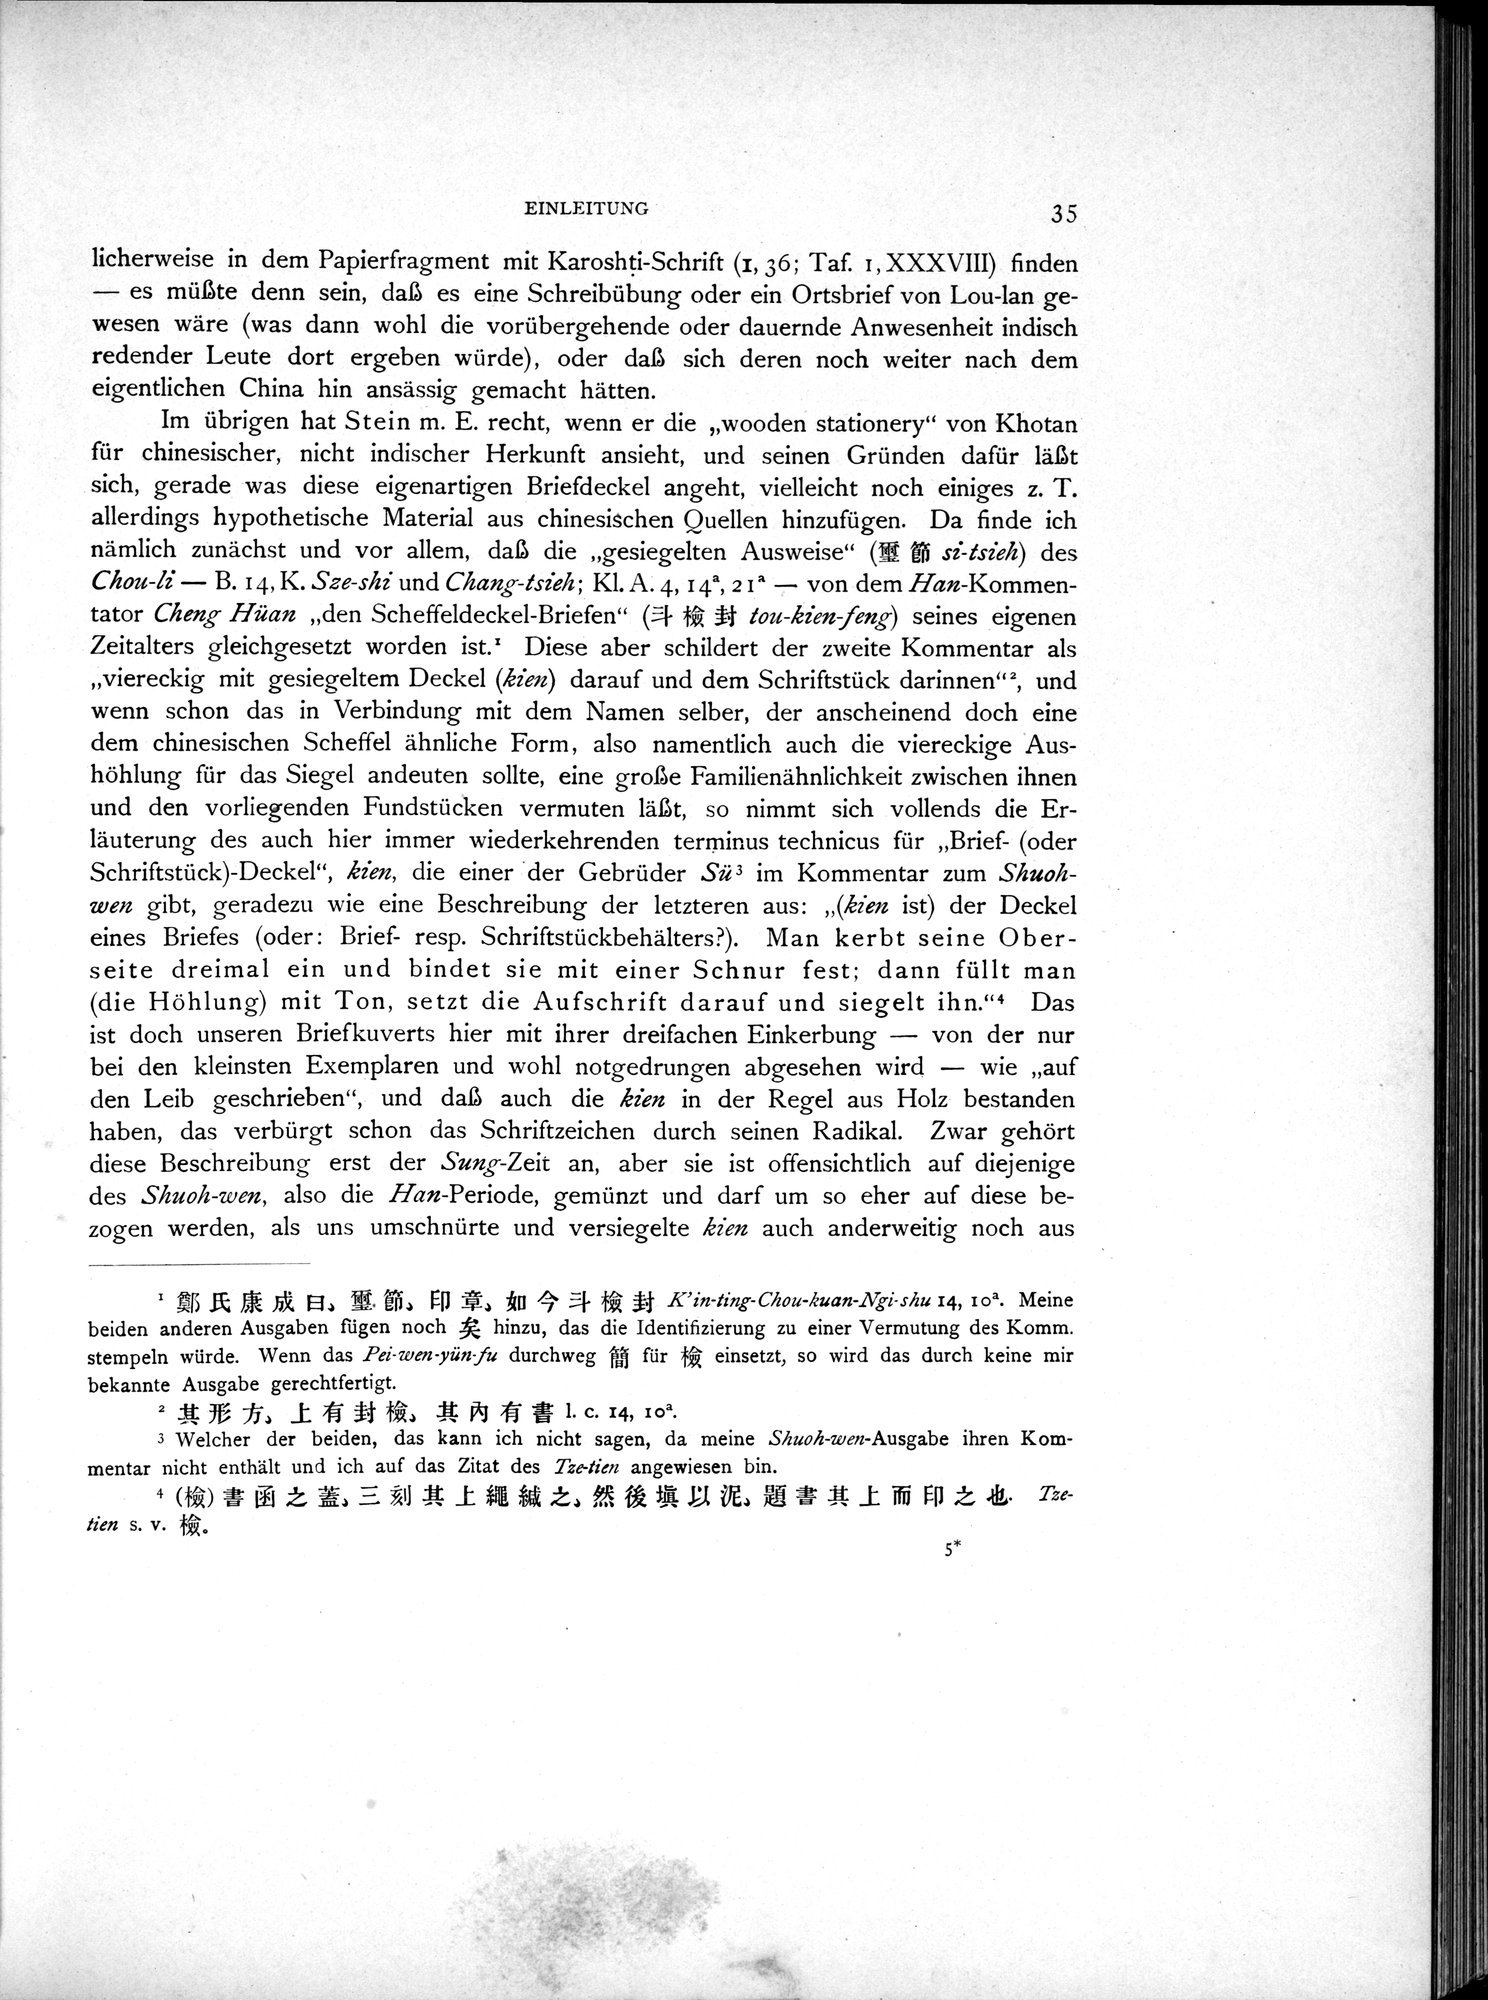 Die Chinesischen Handschriften- und sonstigen Kleinfunde Sven Hedins in Lou-lan : vol.1 / Page 59 (Grayscale High Resolution Image)